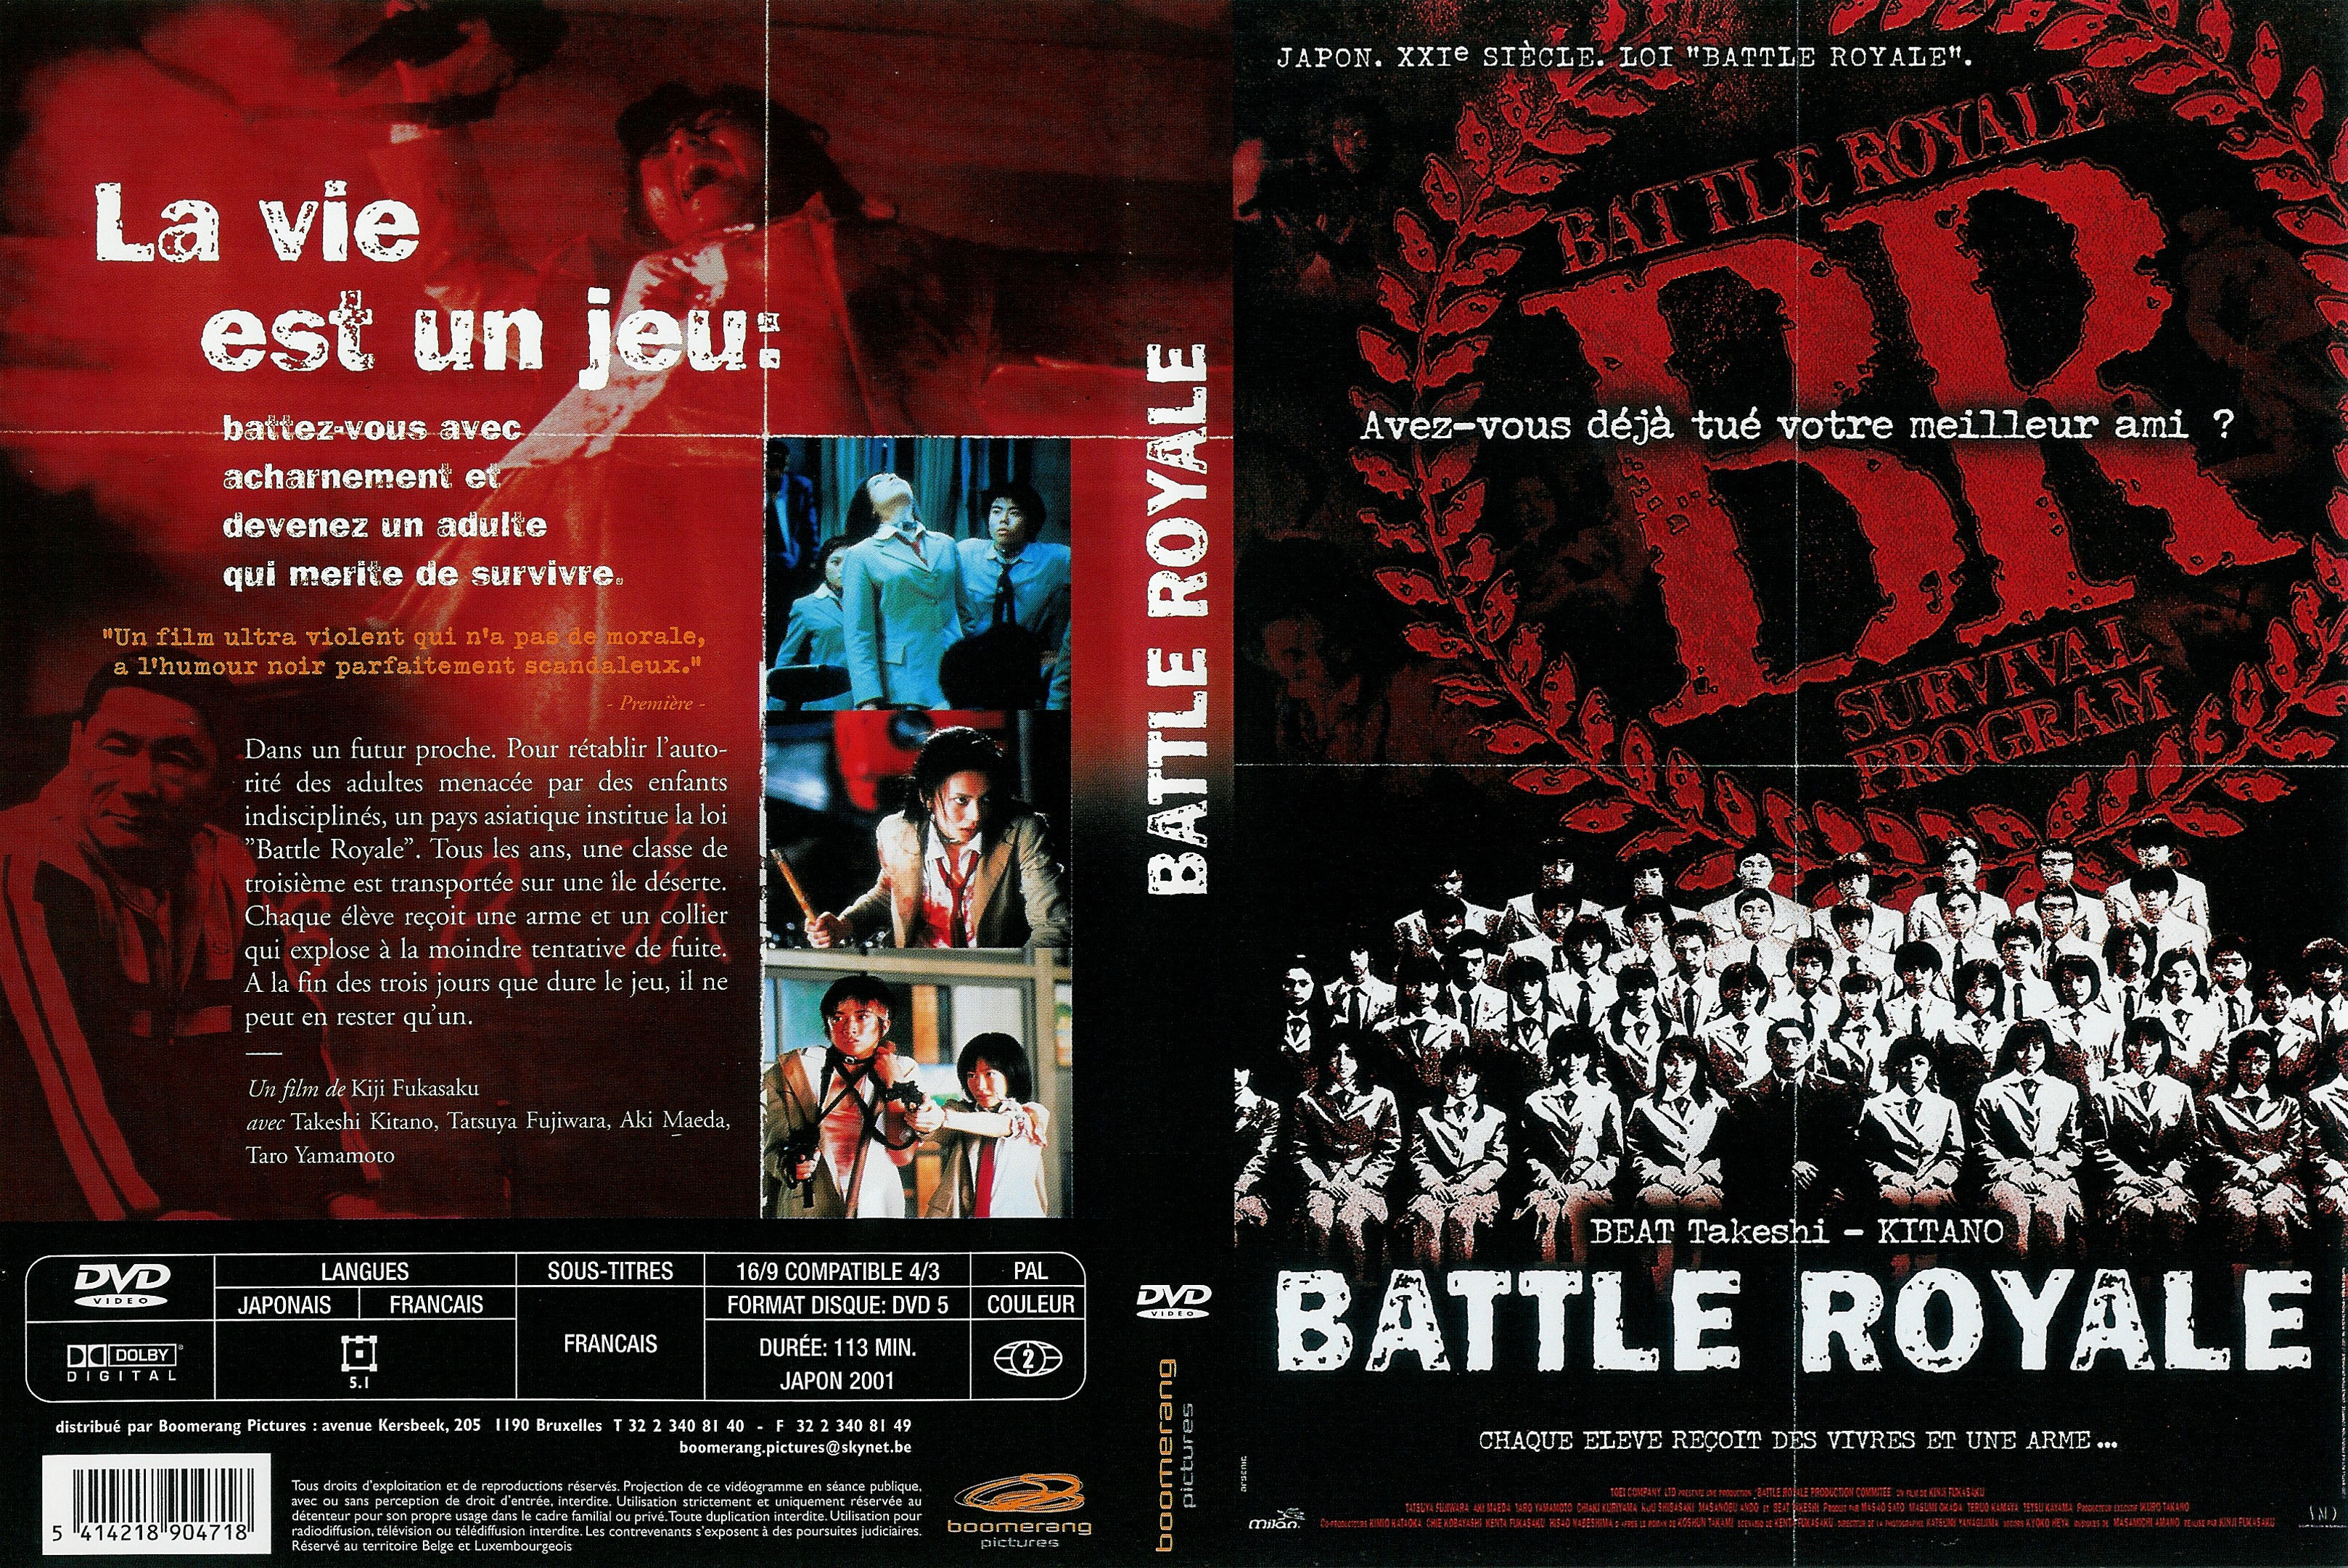 Jaquette DVD Battle royale v2